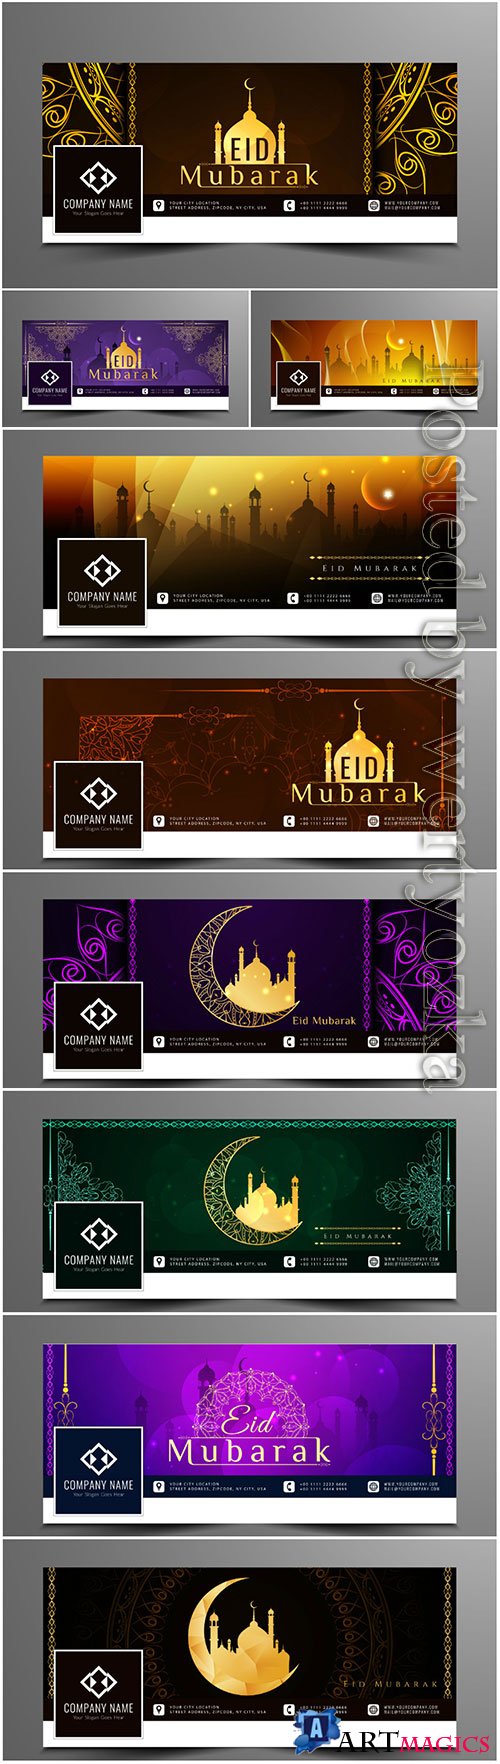 Eid mubarak vector design for facebook timeline